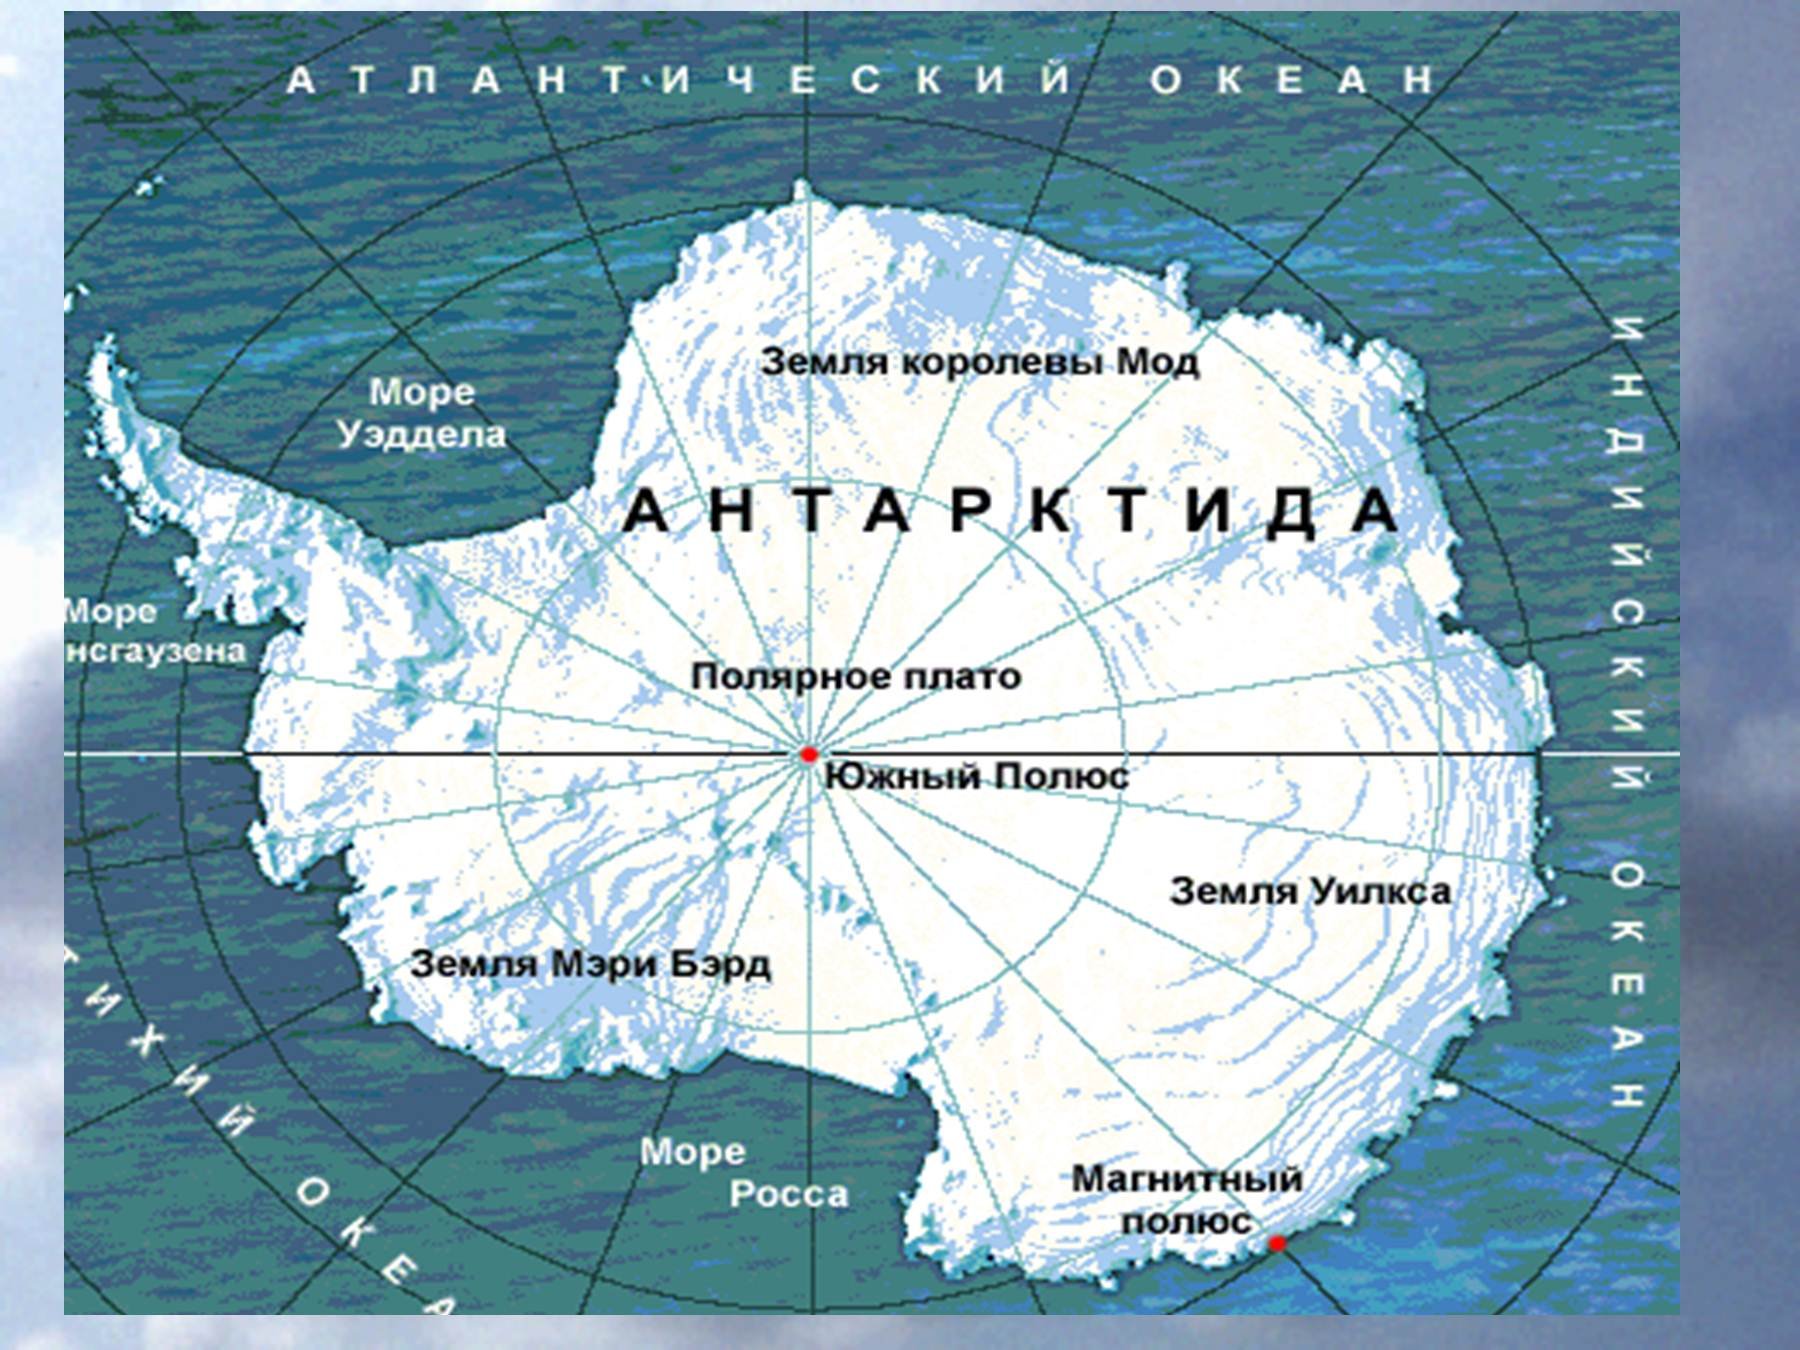 Контурная карта южного океана. Карта Антарктиды моря омывающие Антарктиду. Антарктида моря Росса Уэдделла Беллинсгаузена Амундсена. Моря: Амундсена, Беллинсгаузена, Росса, Уэдделла..